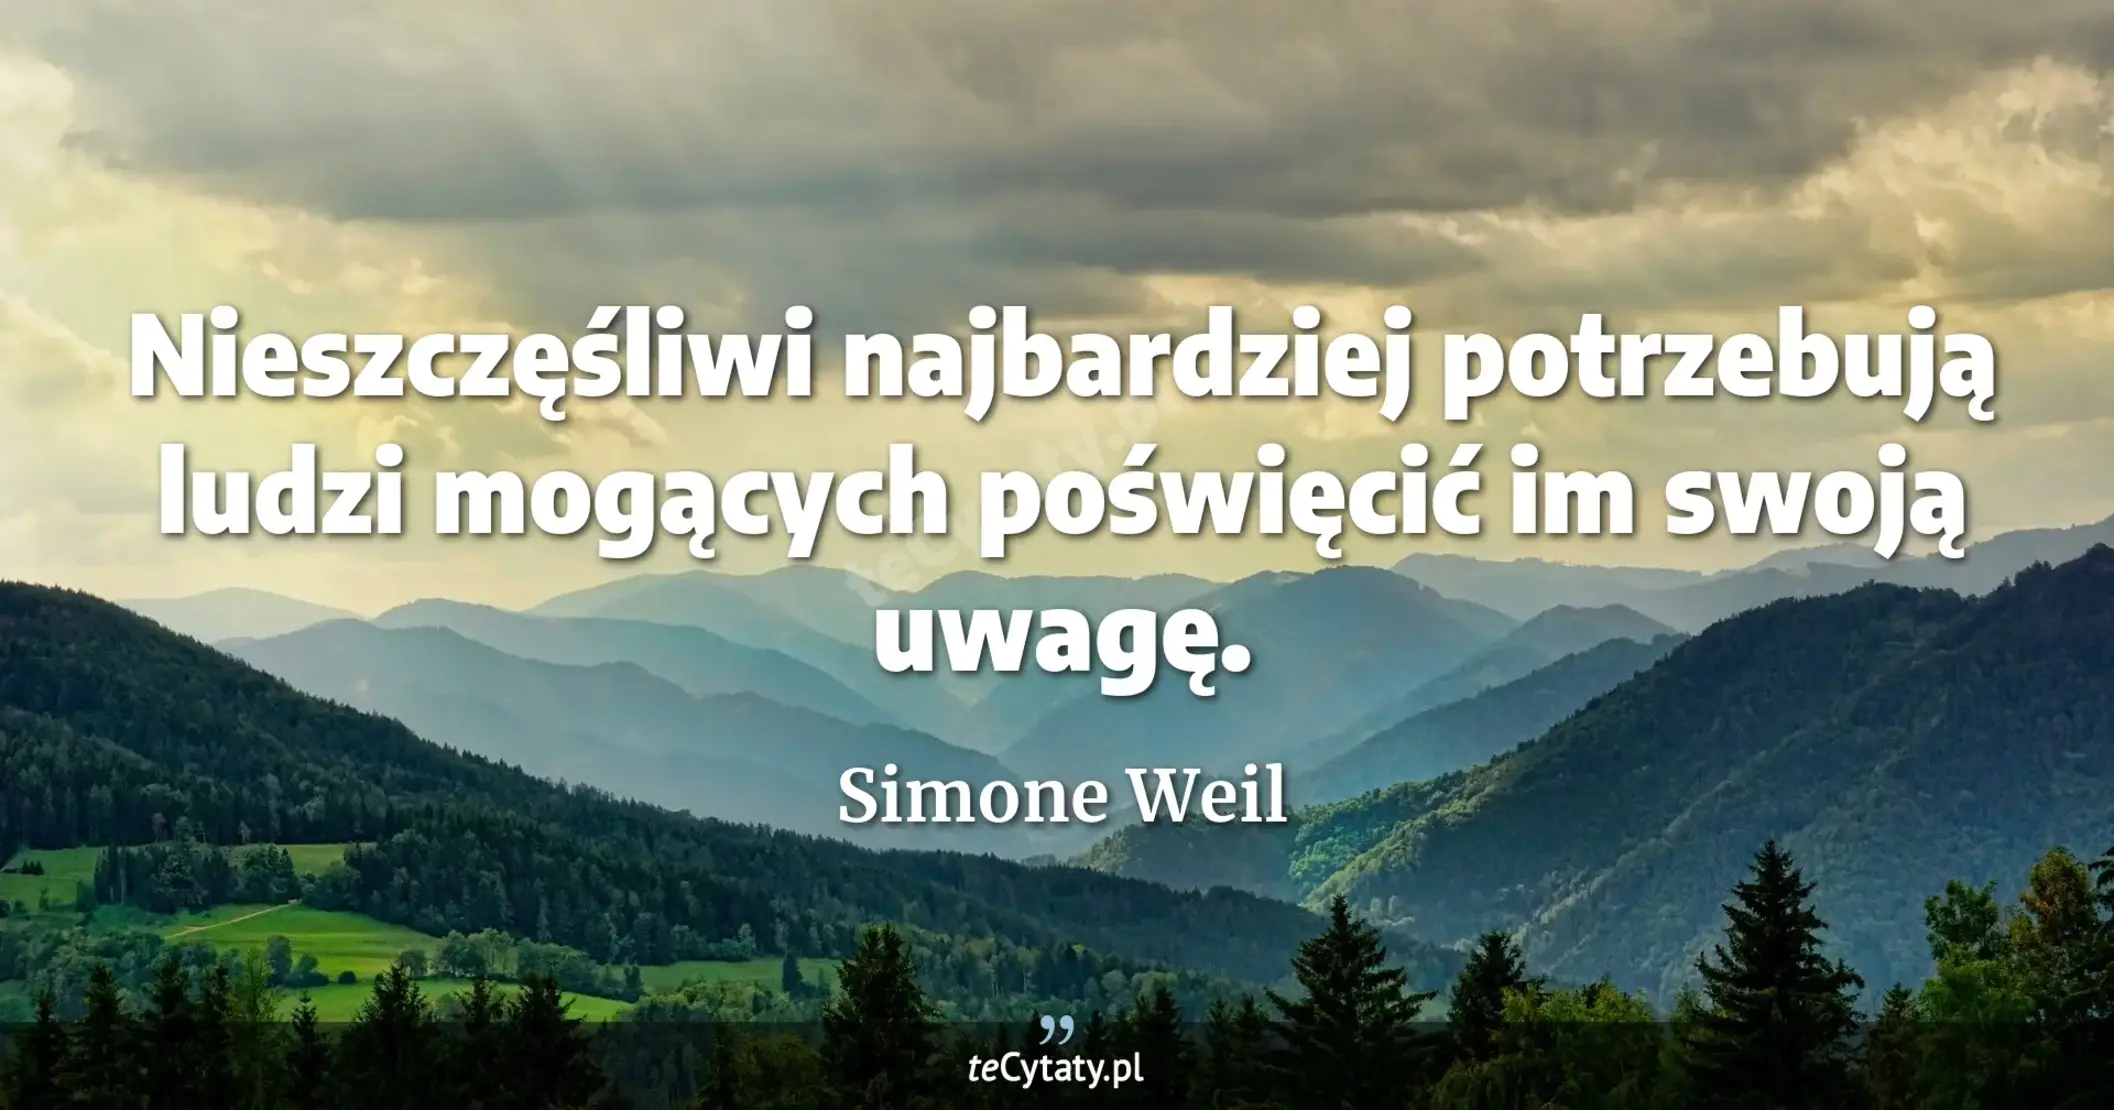 Nieszczęśliwi najbardziej potrzebują ludzi mogących poświęcić im swoją uwagę. - Simone Weil